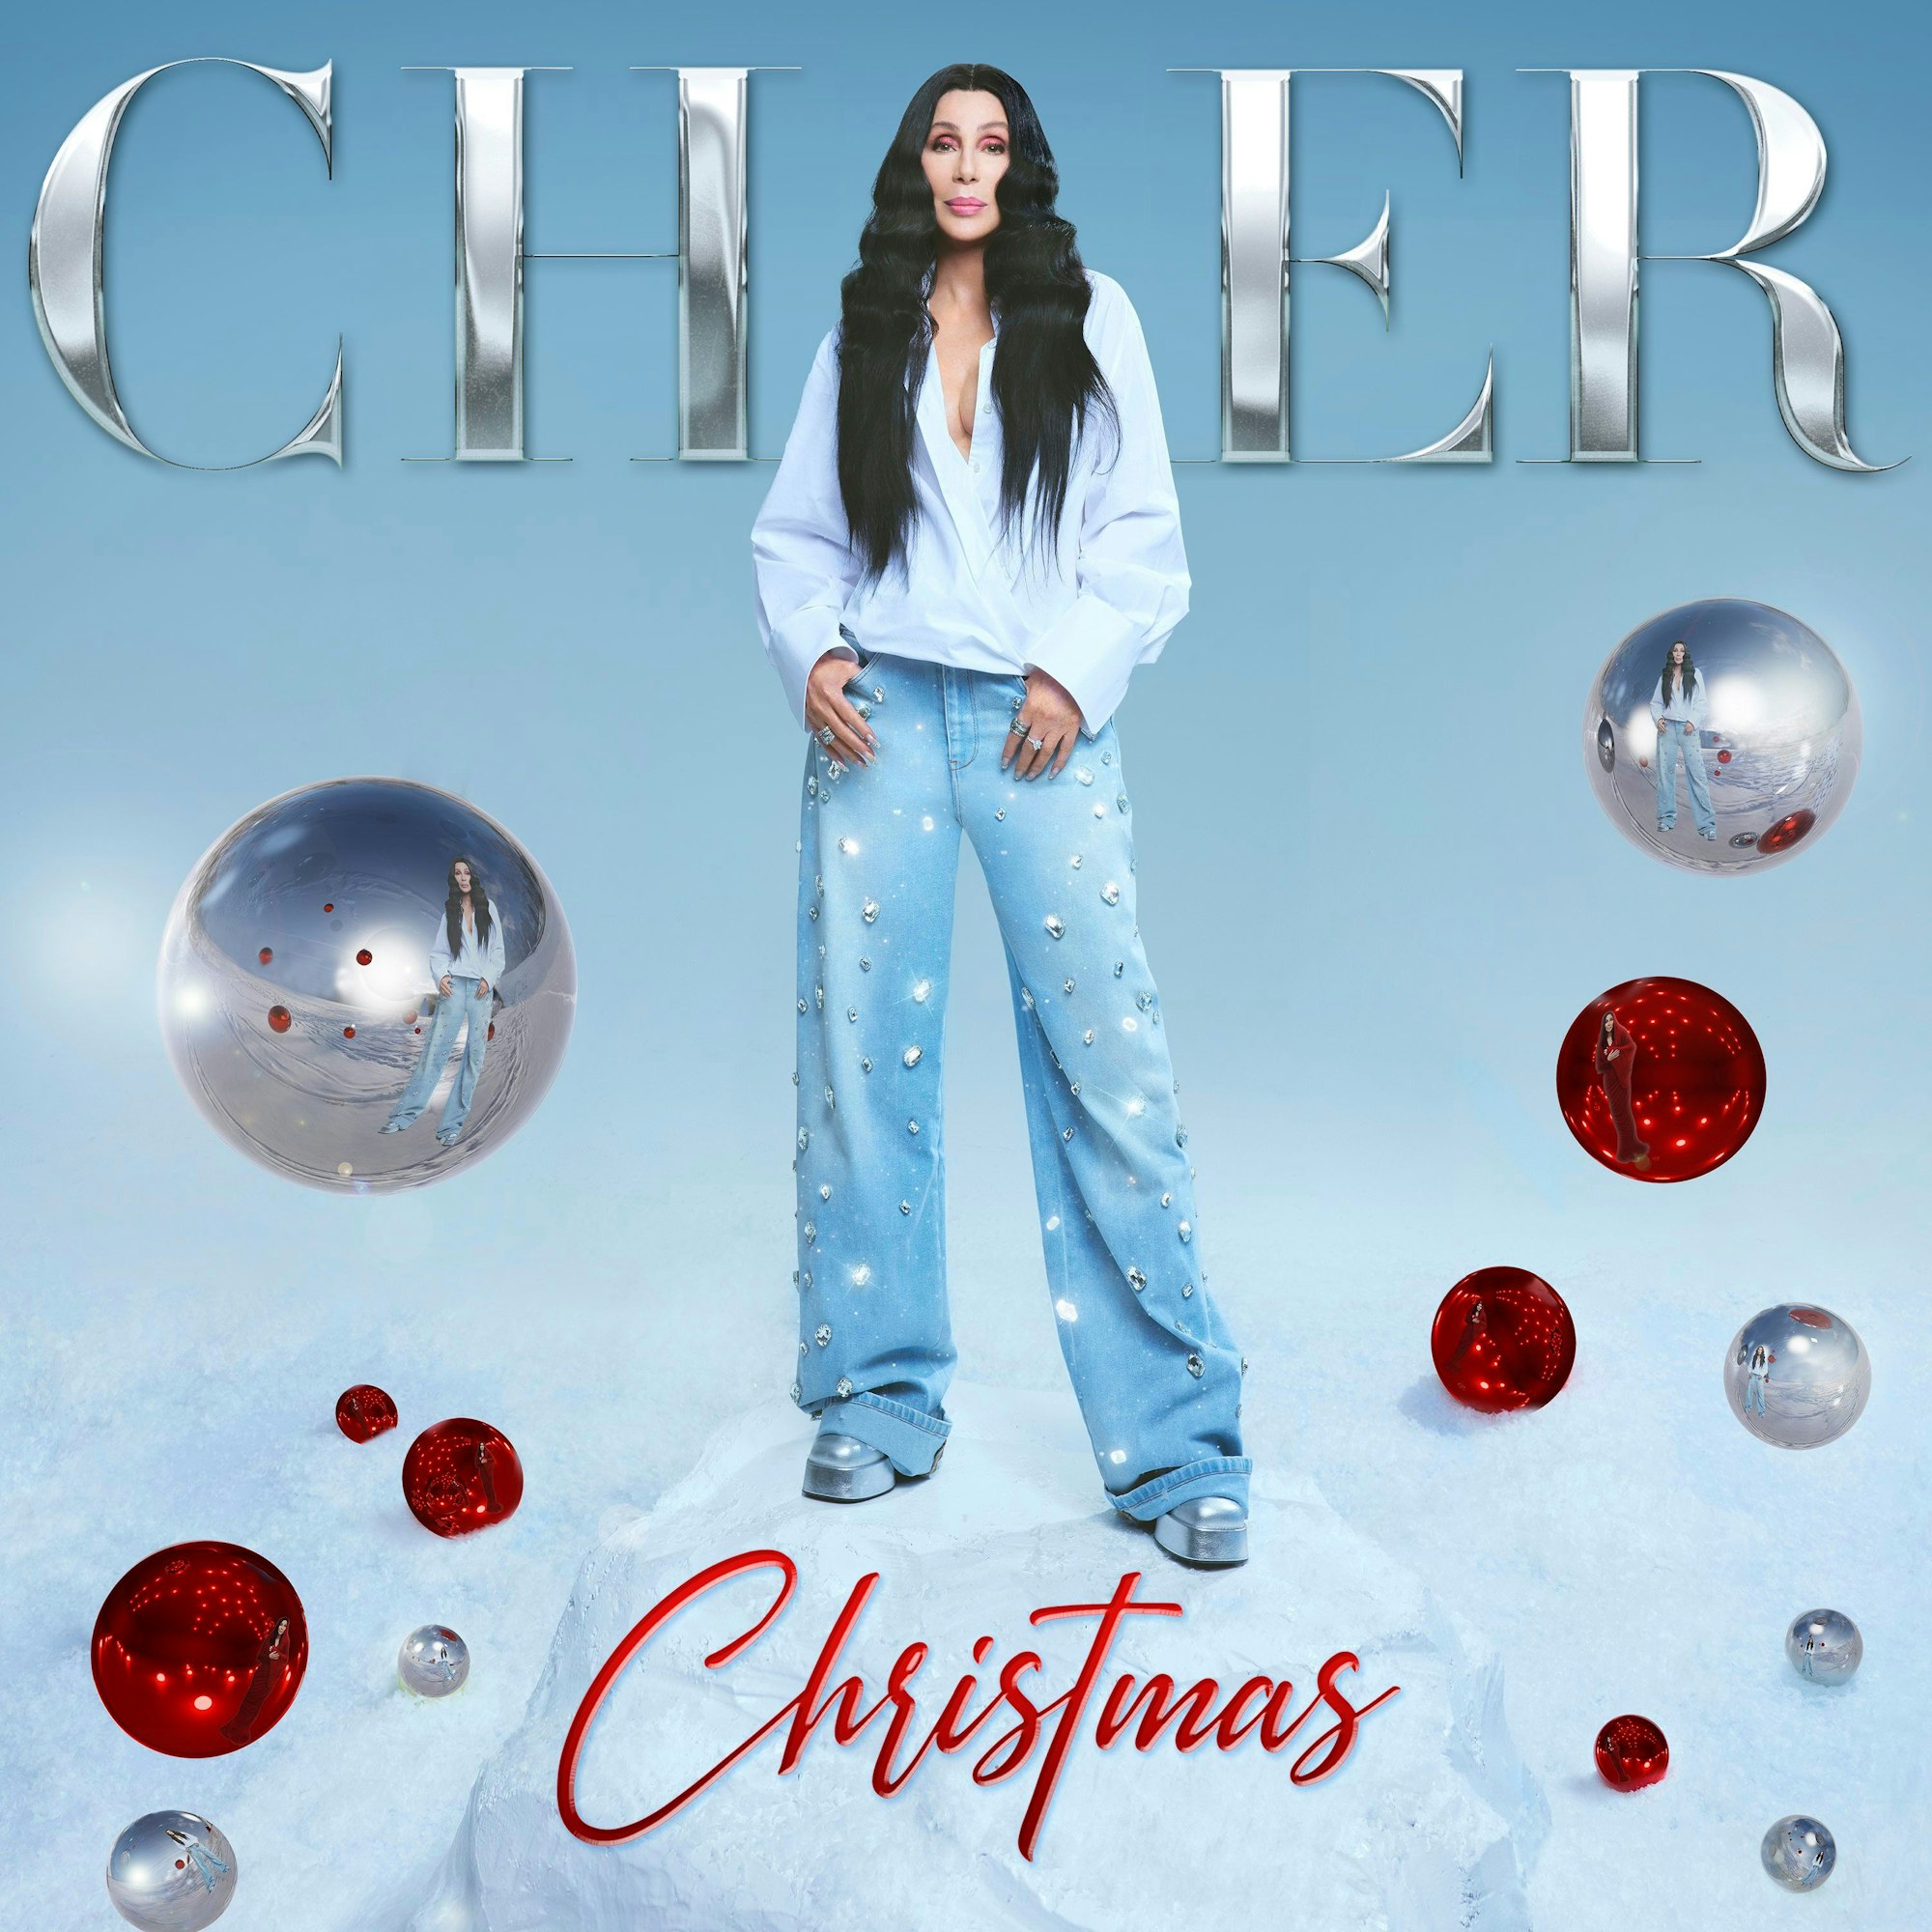 Cover des Albums „Christmas“ von Sängerin Cher. Die Ohrwürmer von Weihnachtsklassikern gehen nicht mehr aus dem Kopf. Da kommen neue Songs gerade richtig.